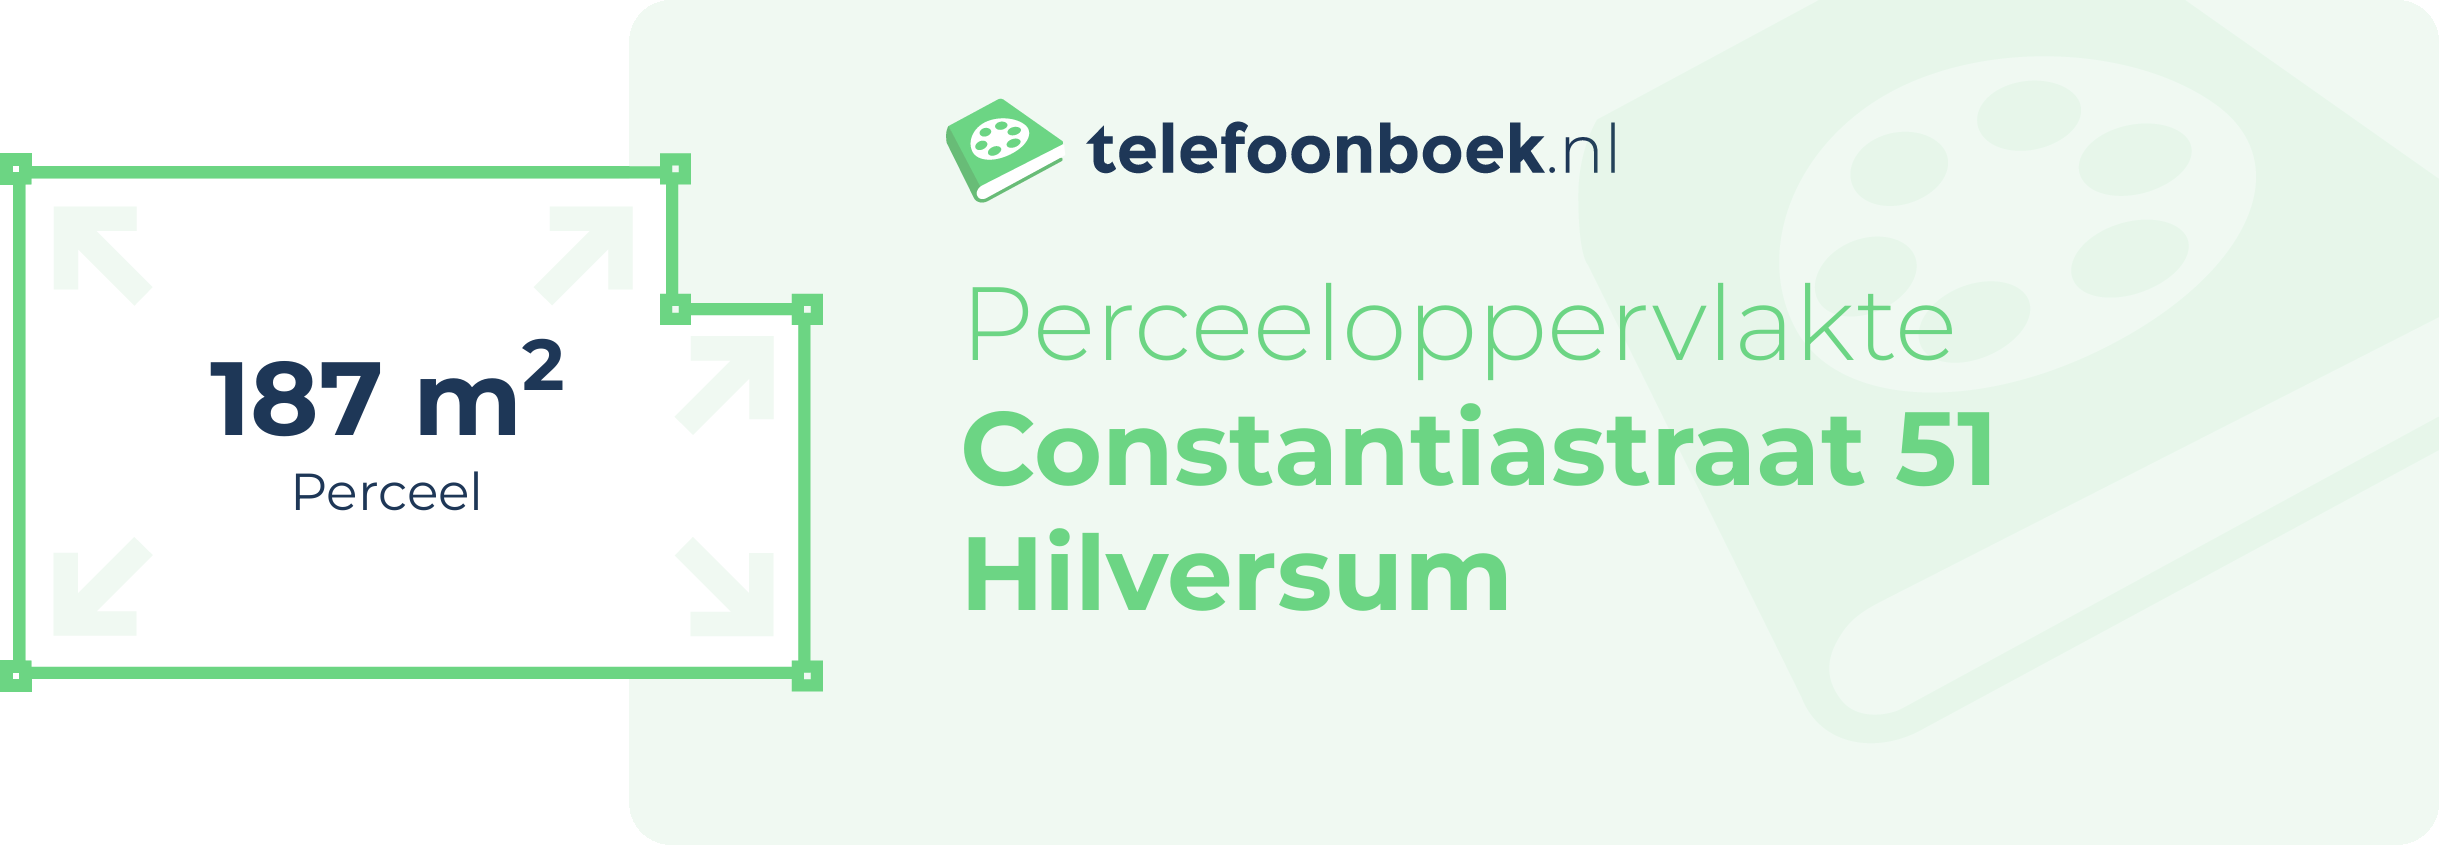 Perceeloppervlakte Constantiastraat 51 Hilversum